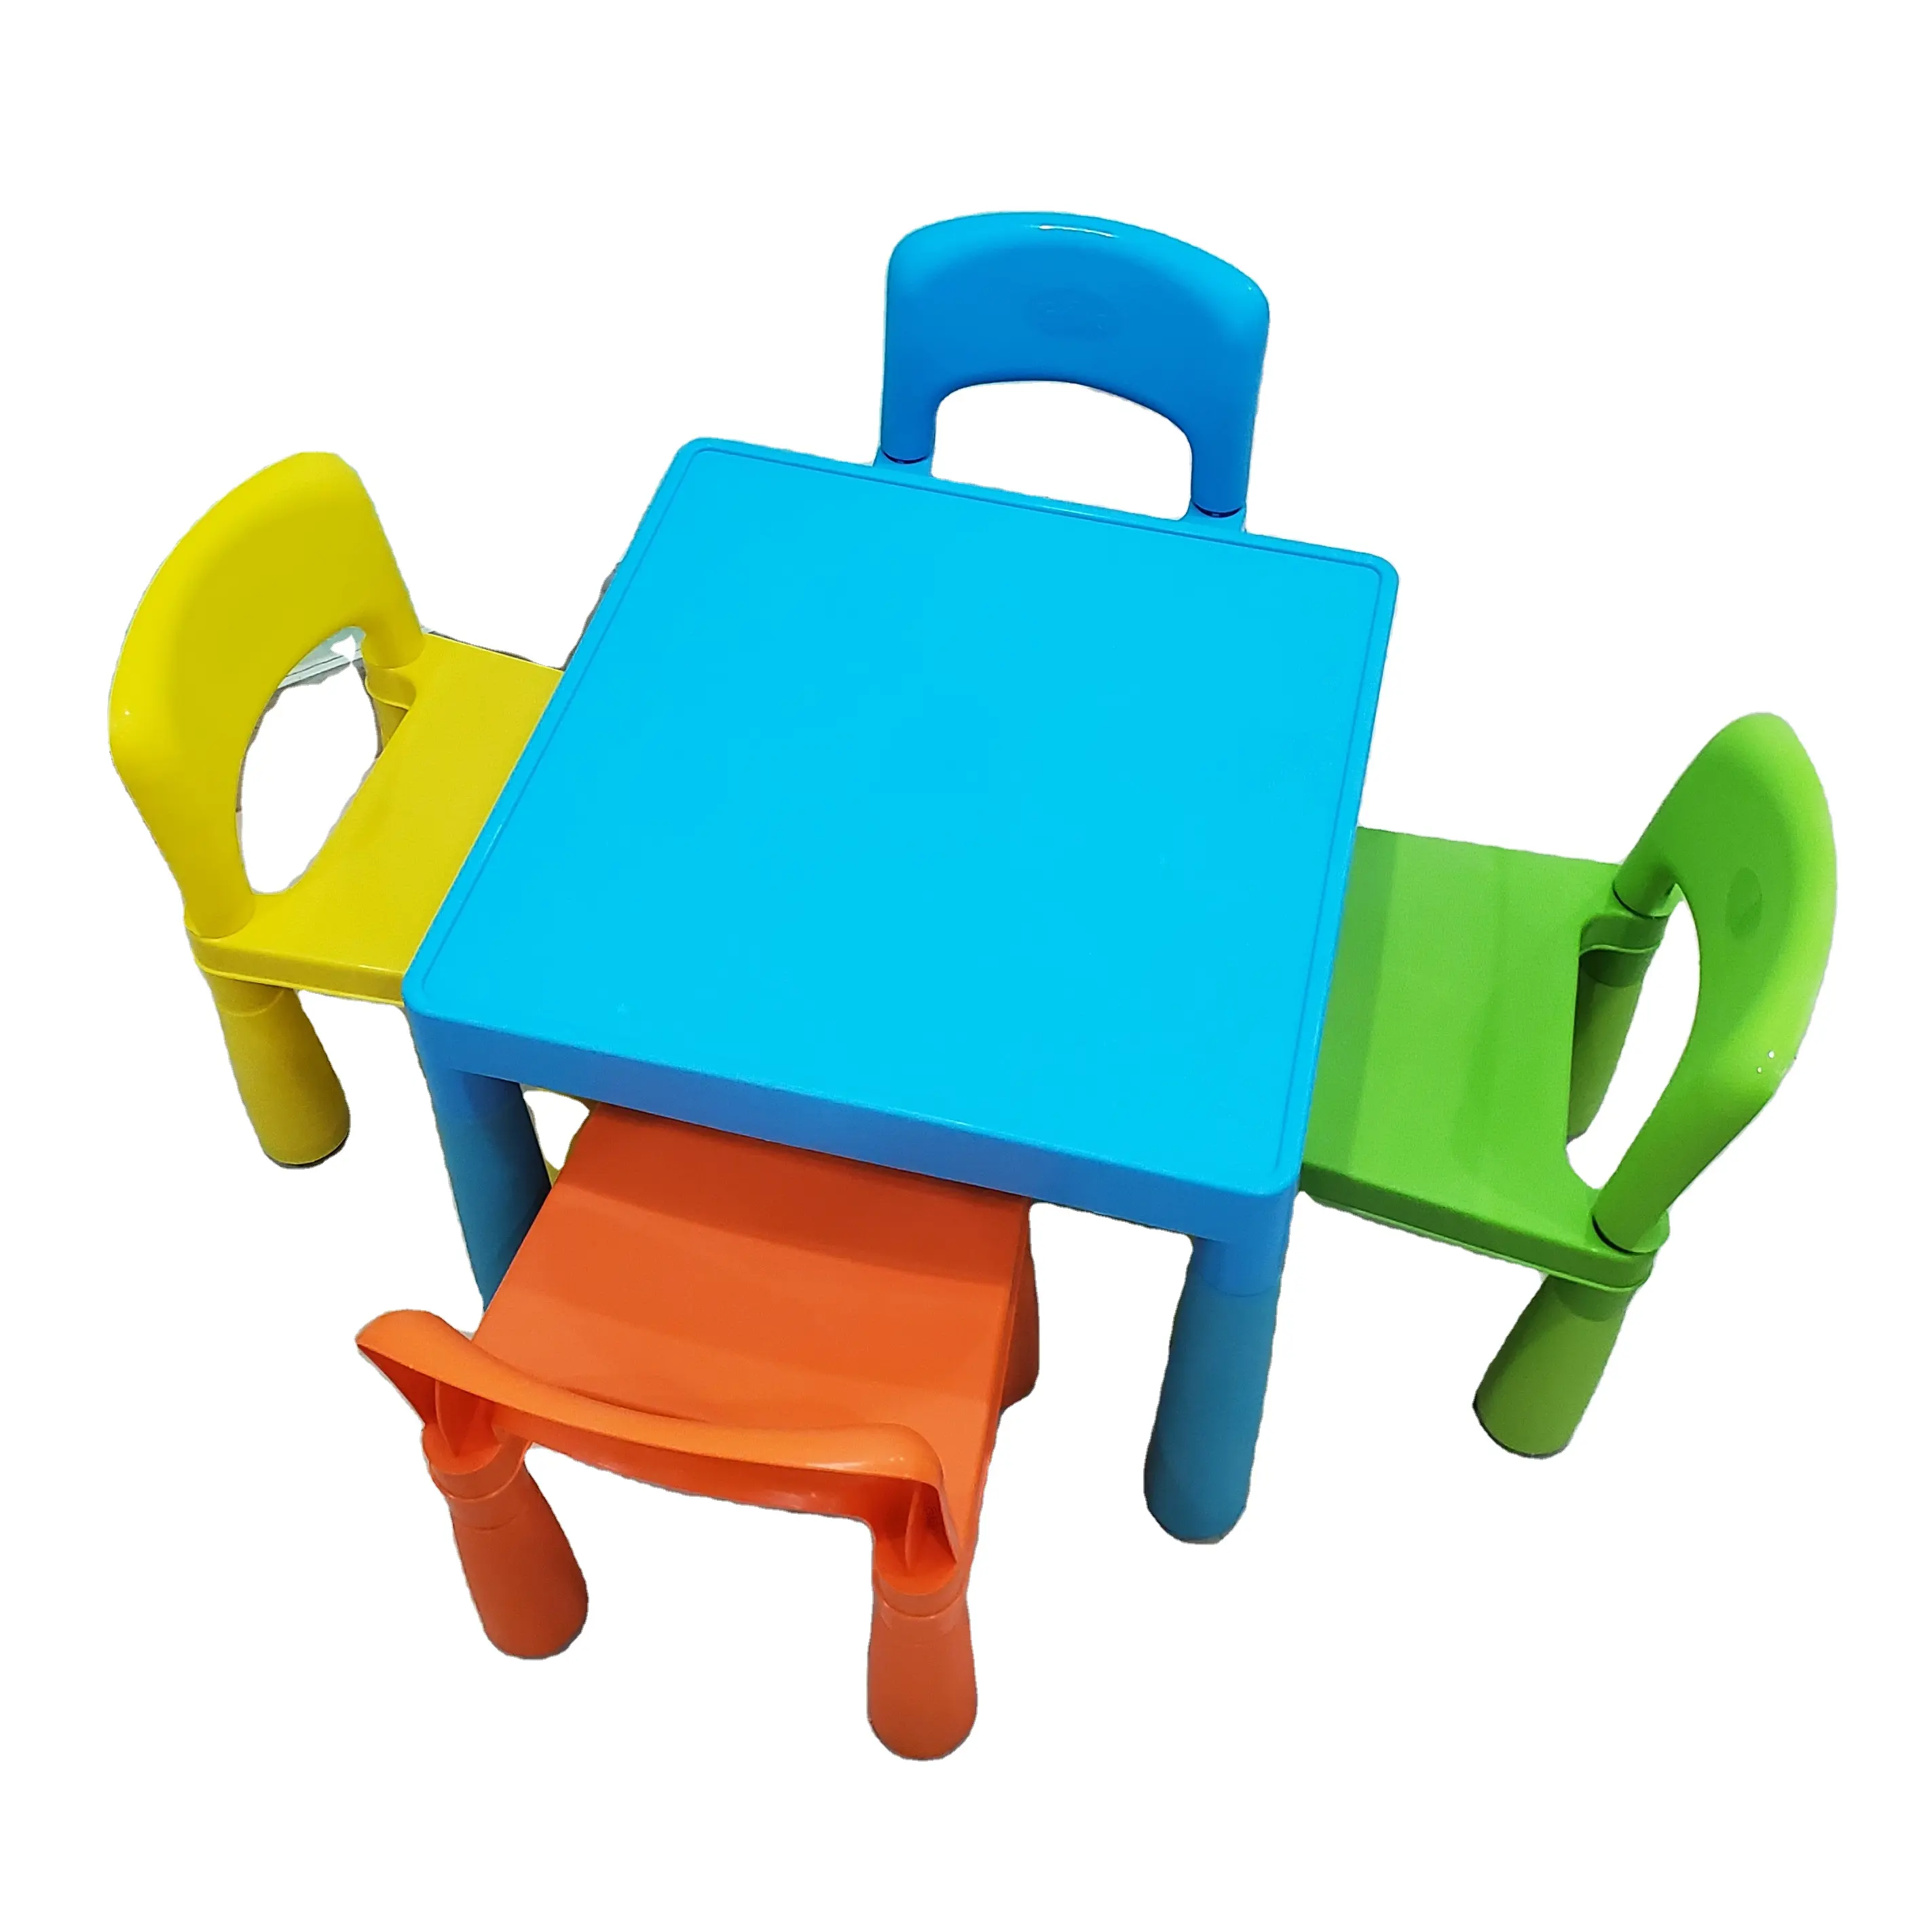 Новый стильный съемный пластиковый мини-стул для детей, Современная красочная компактная детская мебель для детского сада